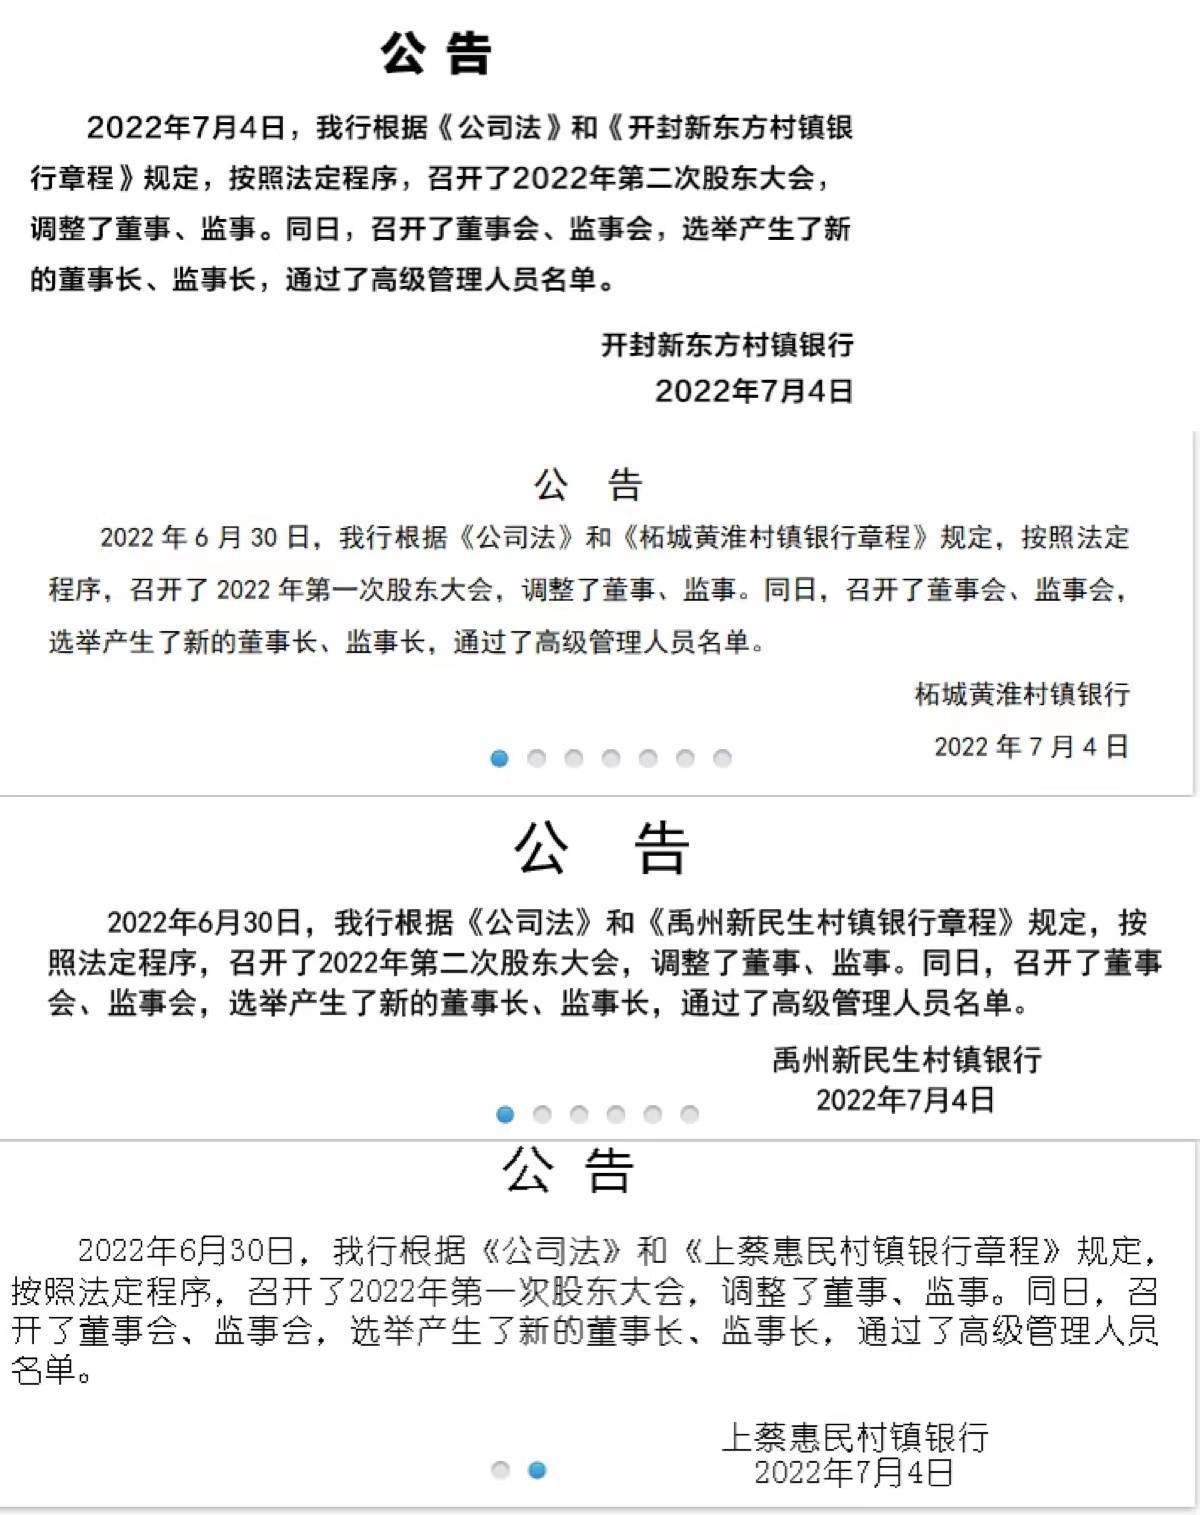 河南4家村镇银行同日发布公告更换董事长、监事长及高管_图1-3